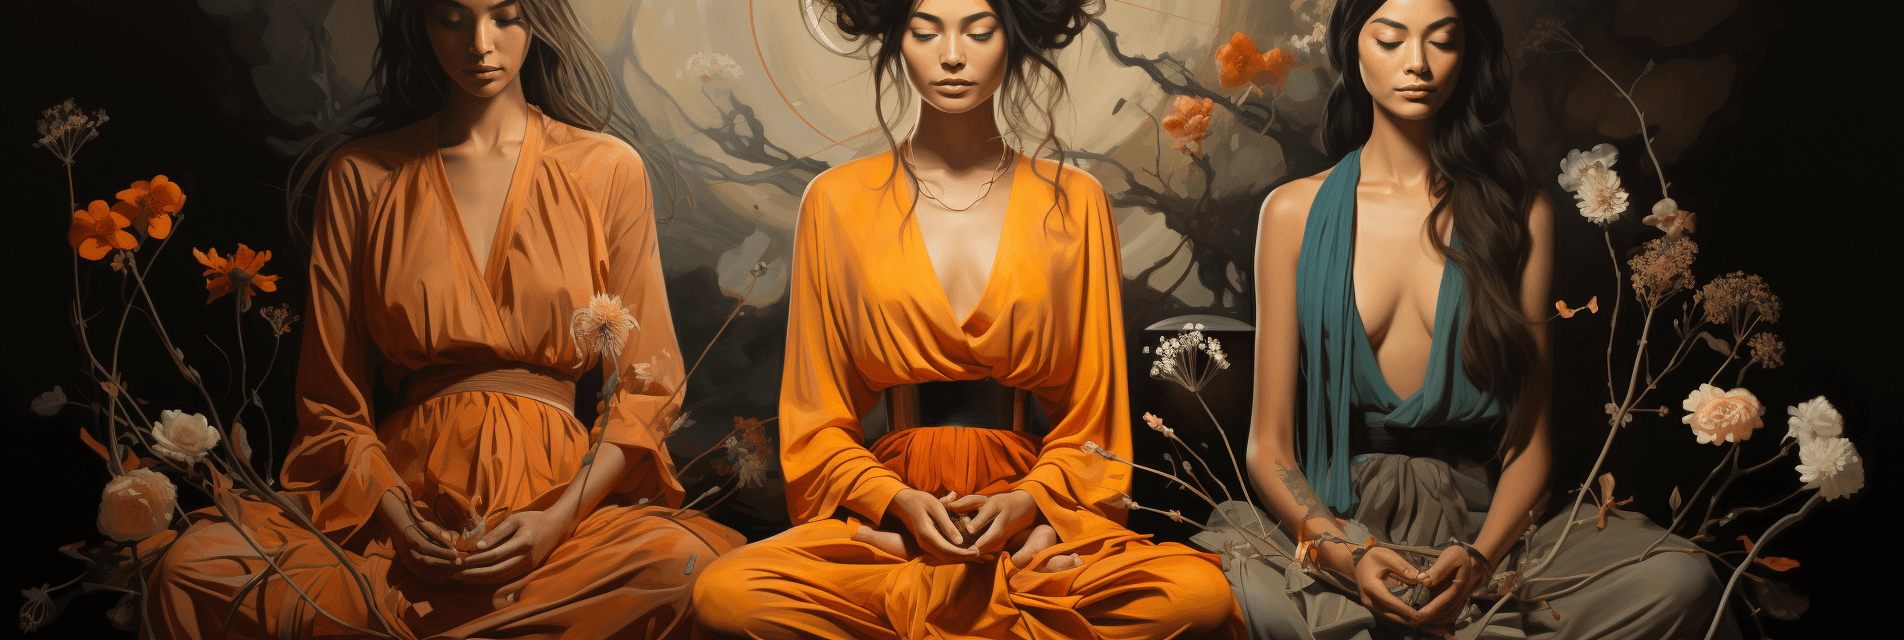 Women in Meditation